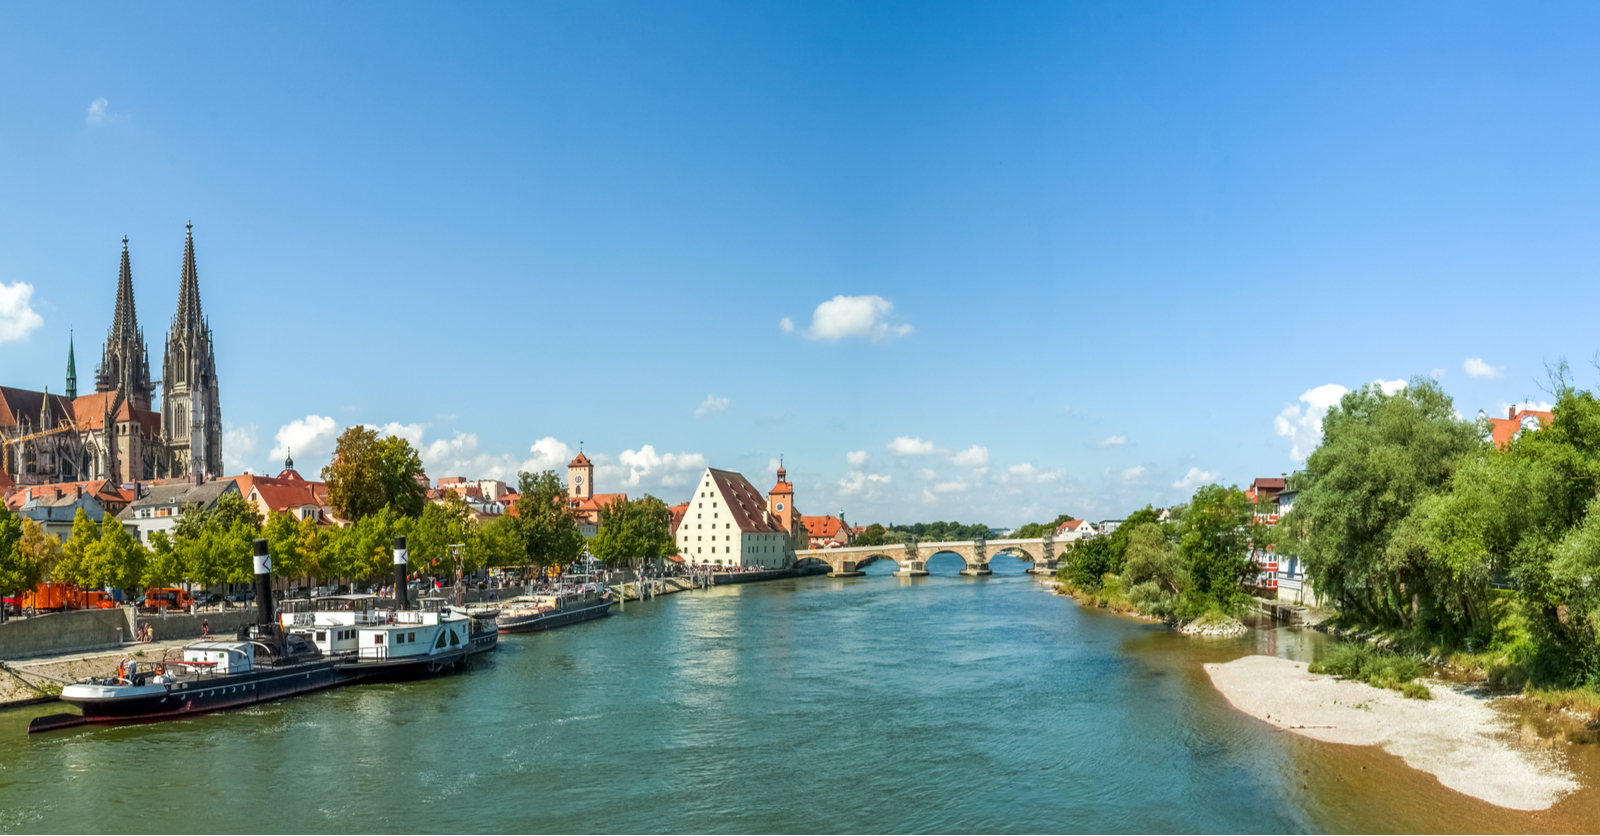 Regensburg Danube